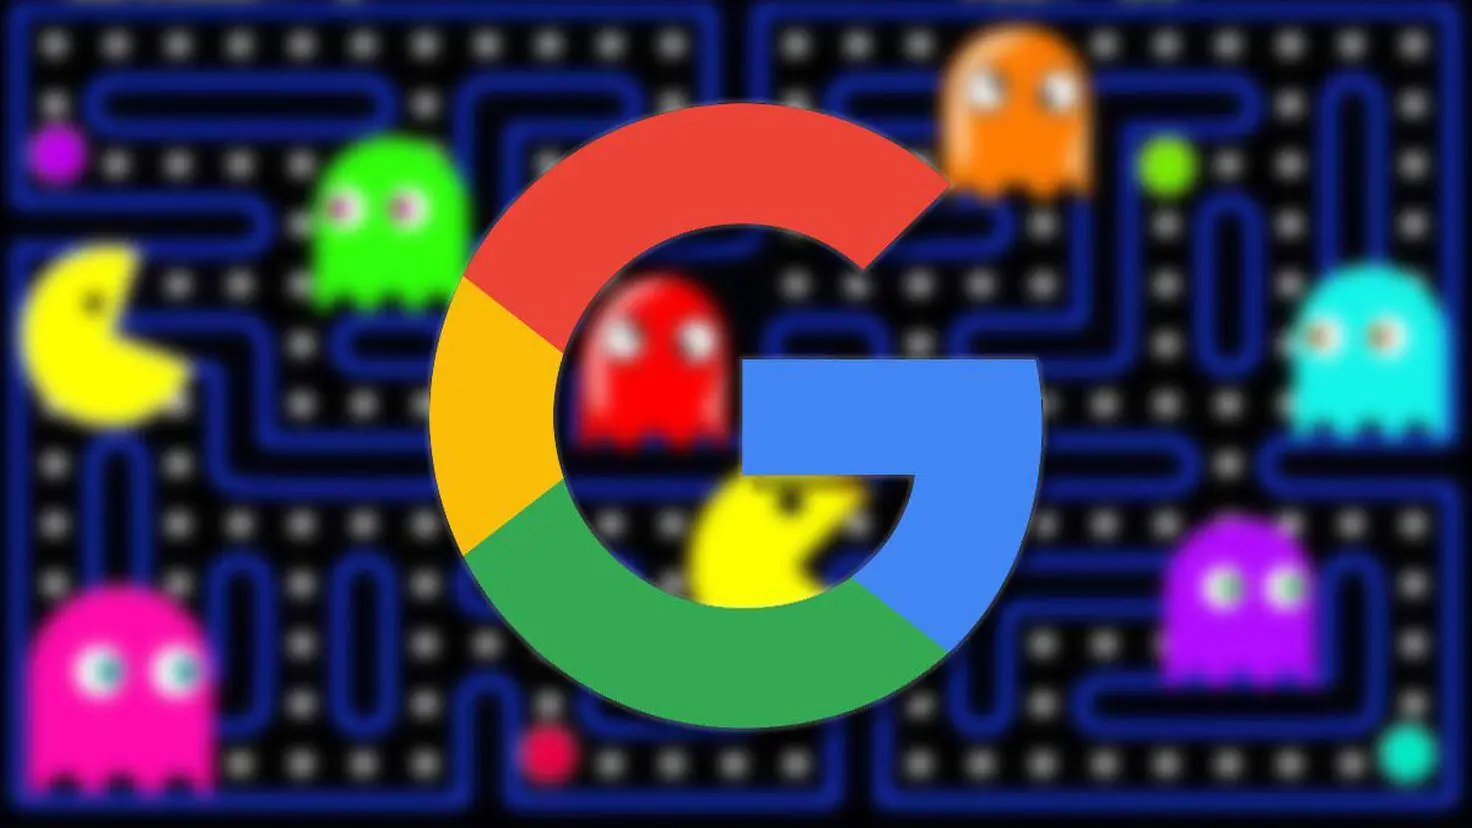 juegos en la pantalla de google - Qué juegos hay para jugar en Google